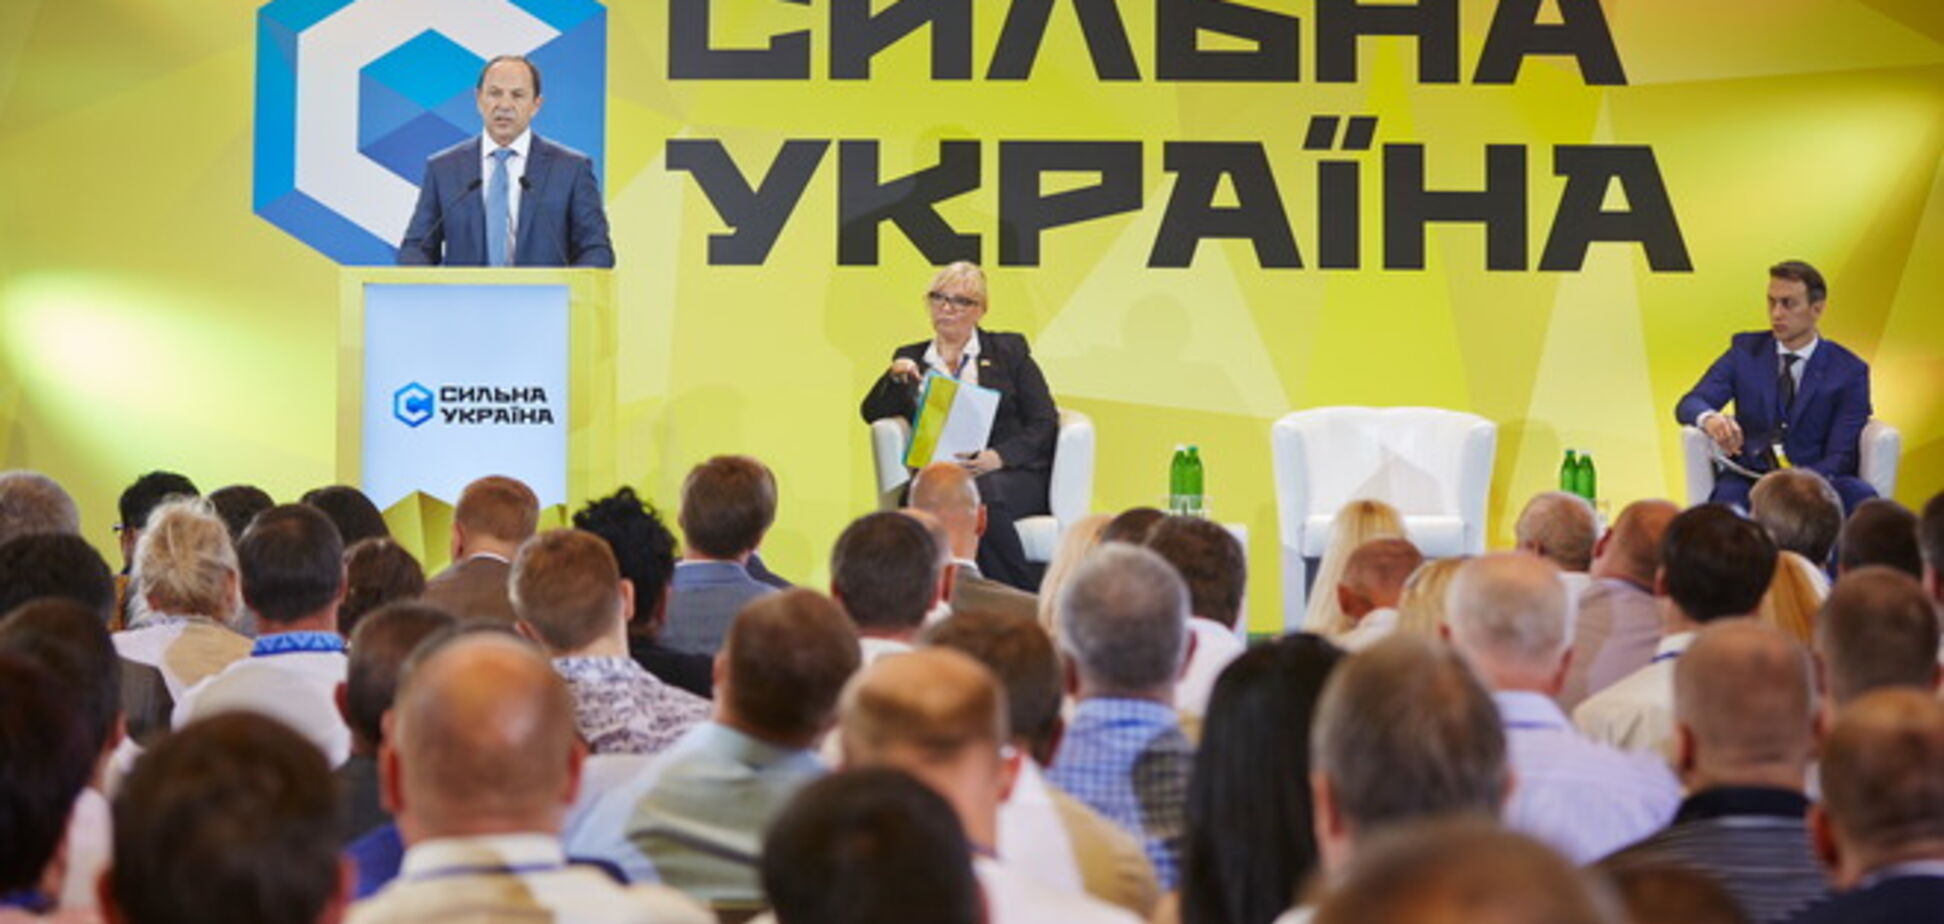 Тигипко возродил 'Сильную Украину'